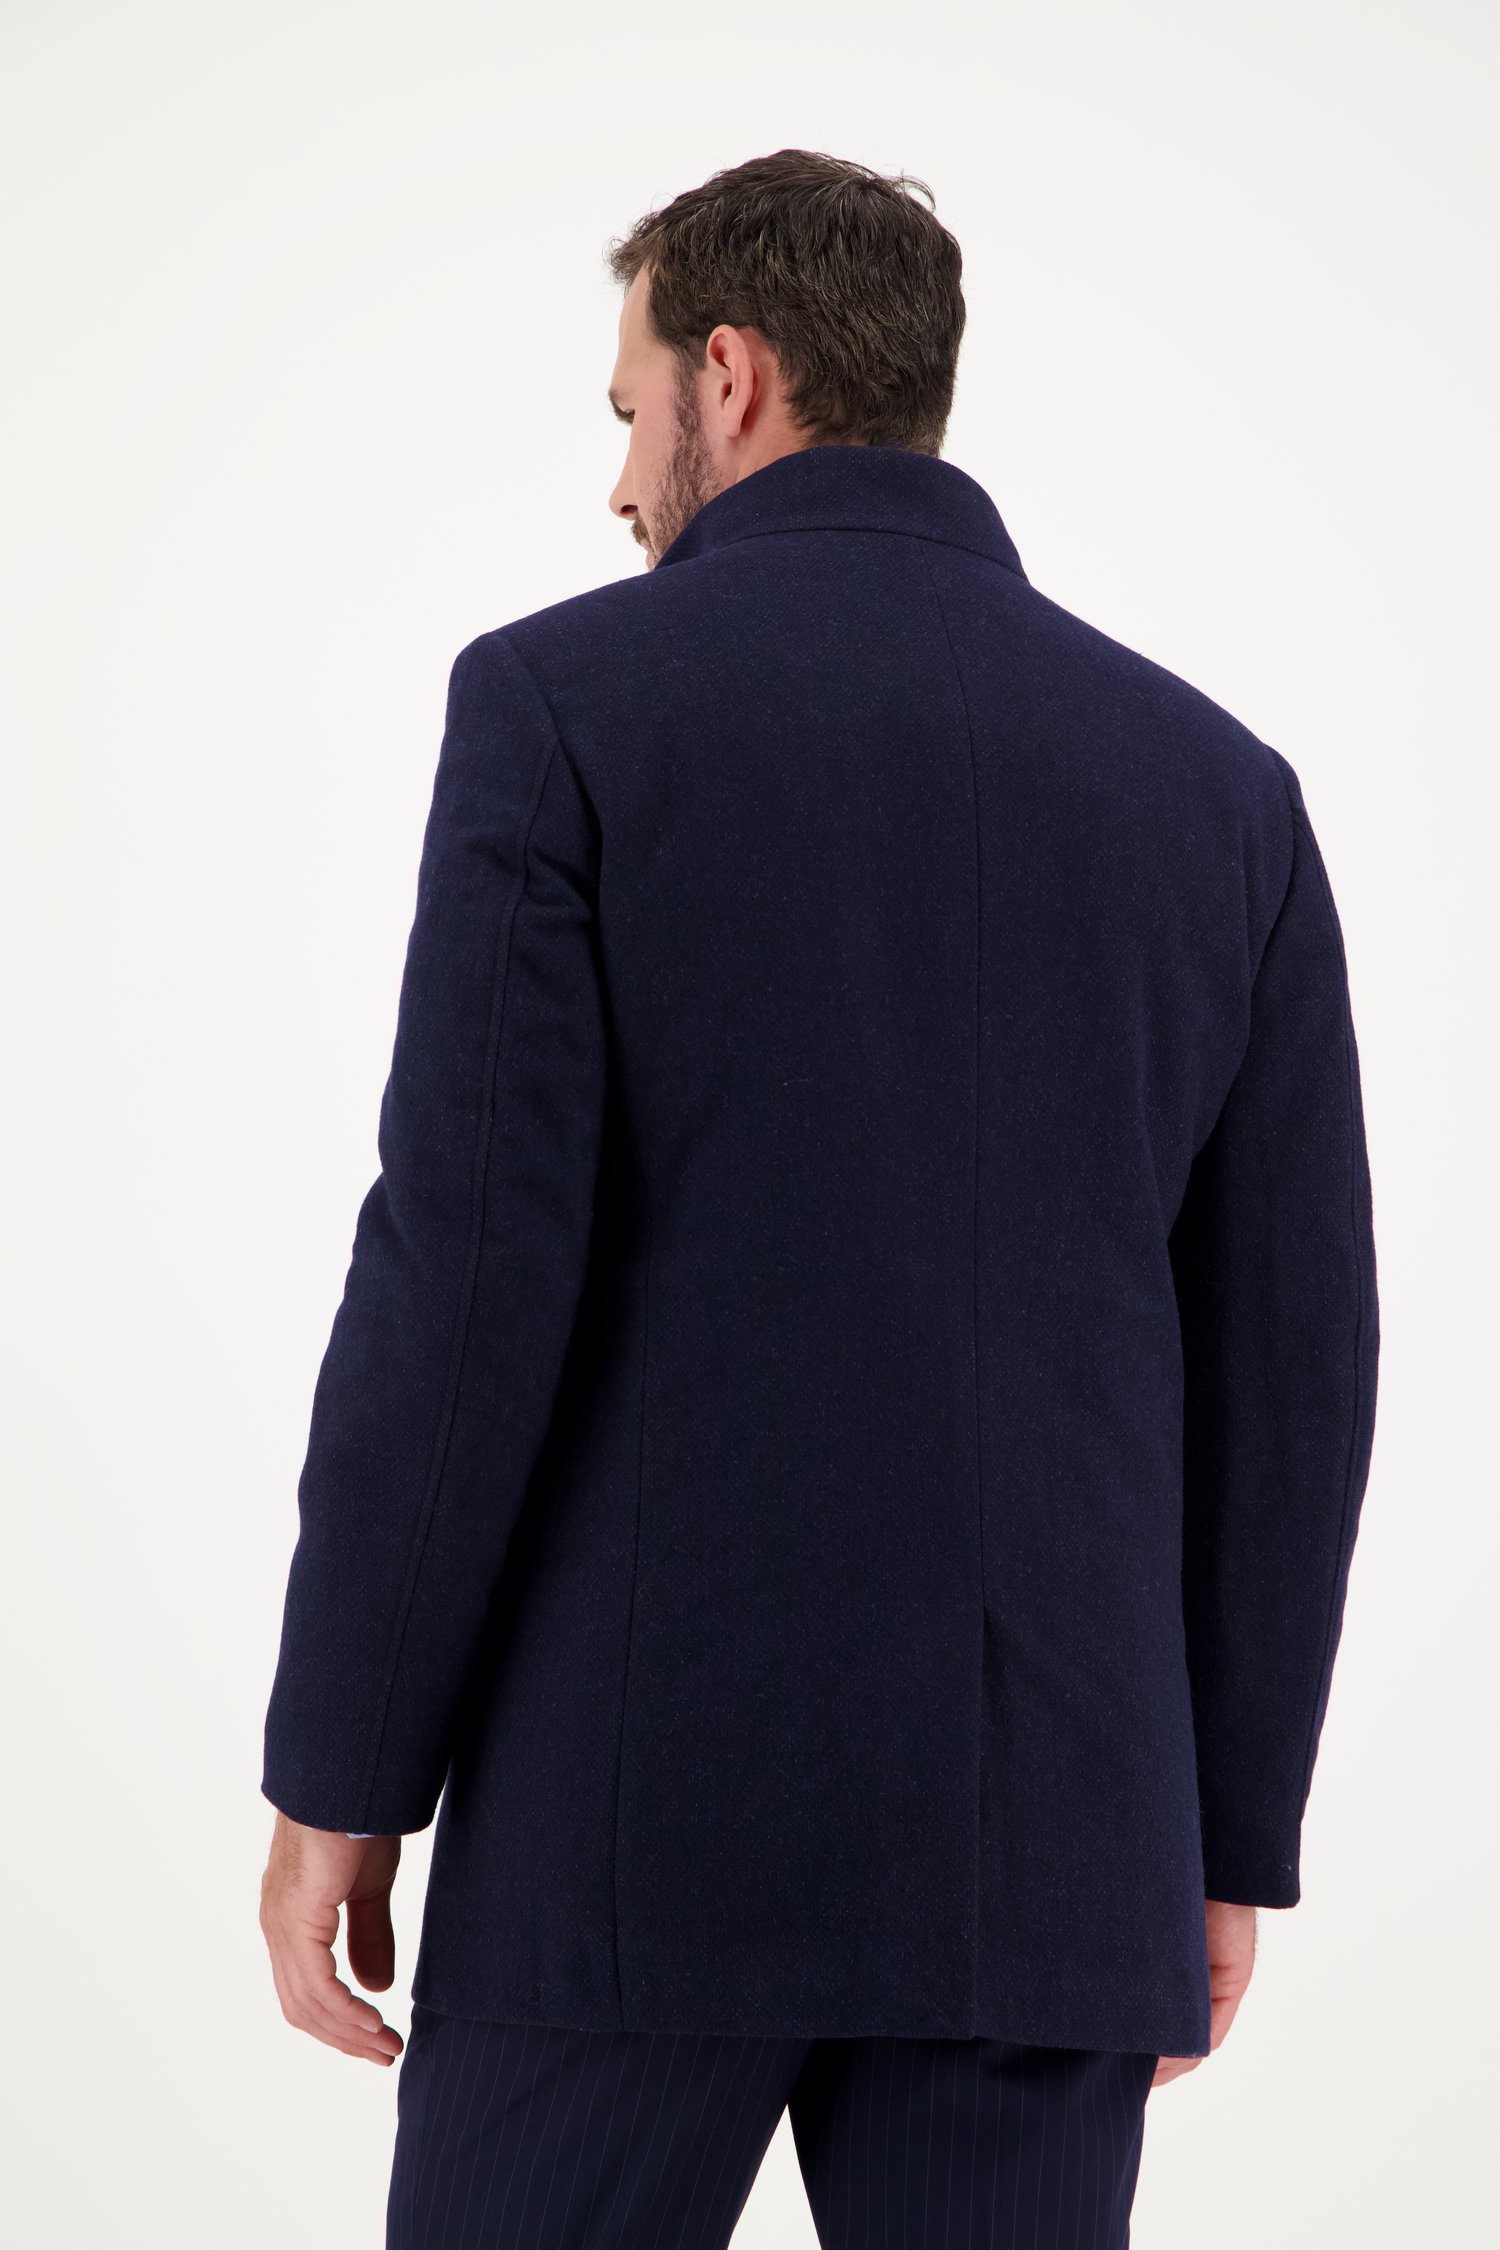 Blauwe korte mantel met binnenjas van Dansaert Black voor Heren